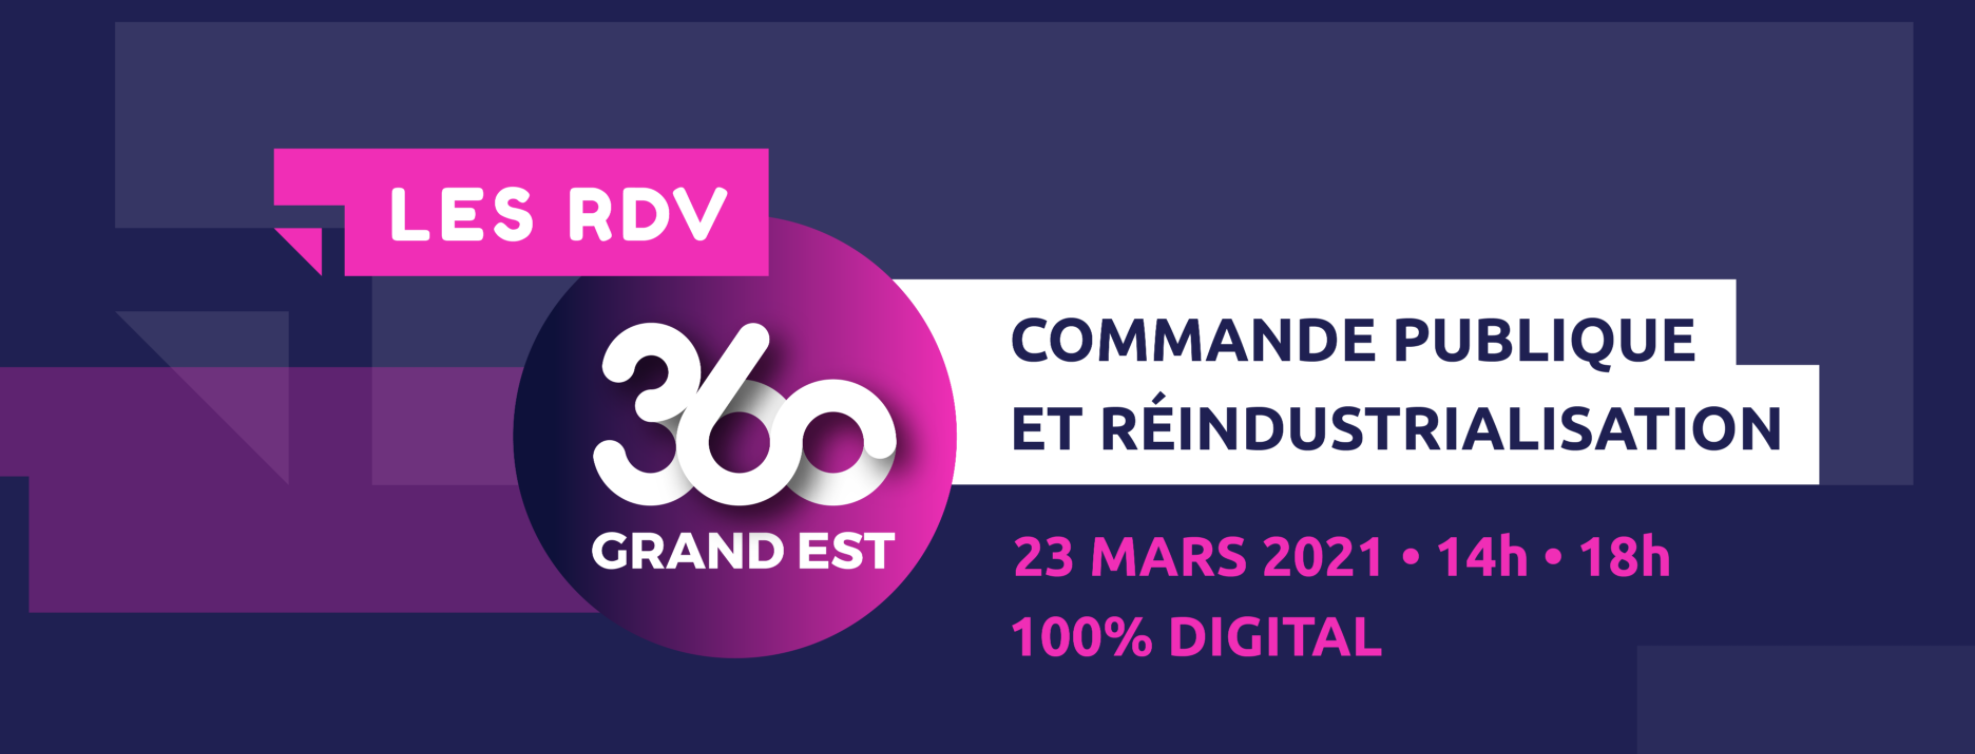 Visuel "Les RDV du 360 Grand Est"